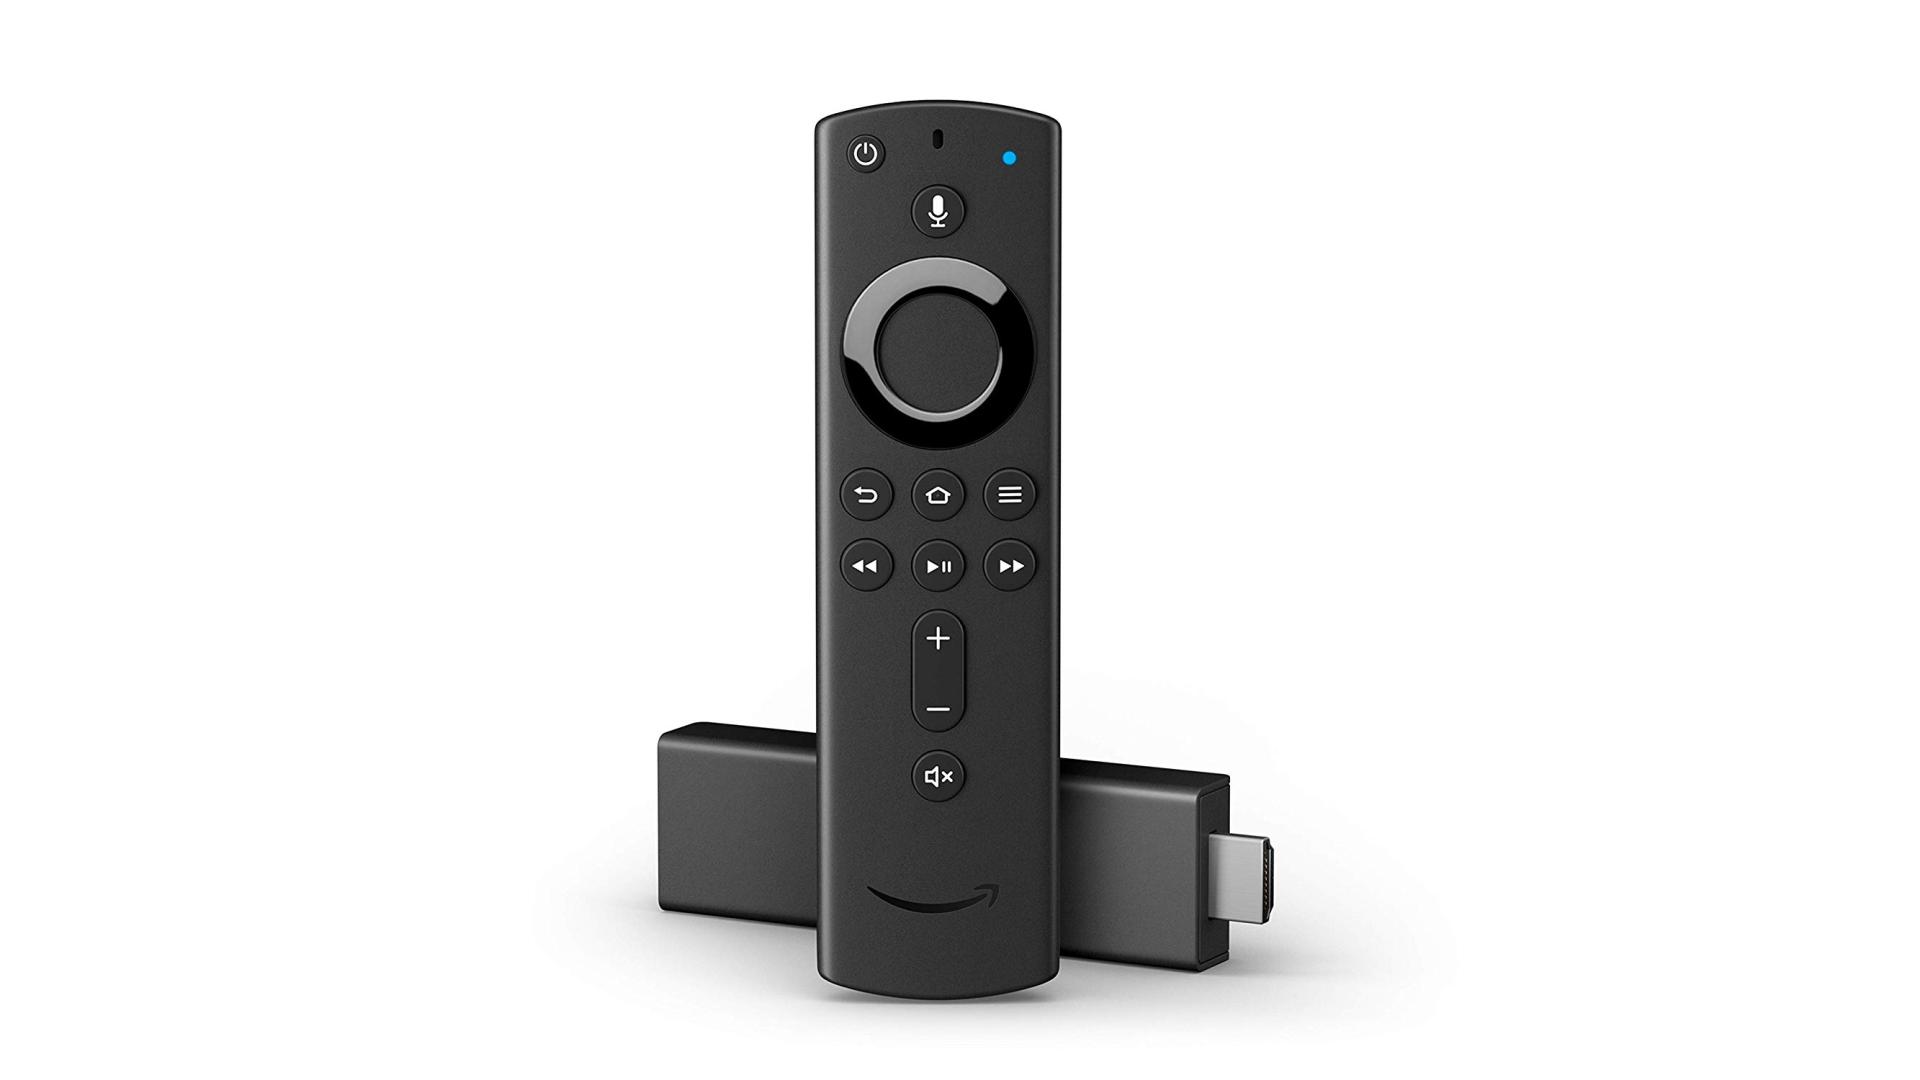 Amazon dévoile les nouveaux Fire TV Stick (4K) avec télécommande Alexa : caractéristiques, disponibilités et prix